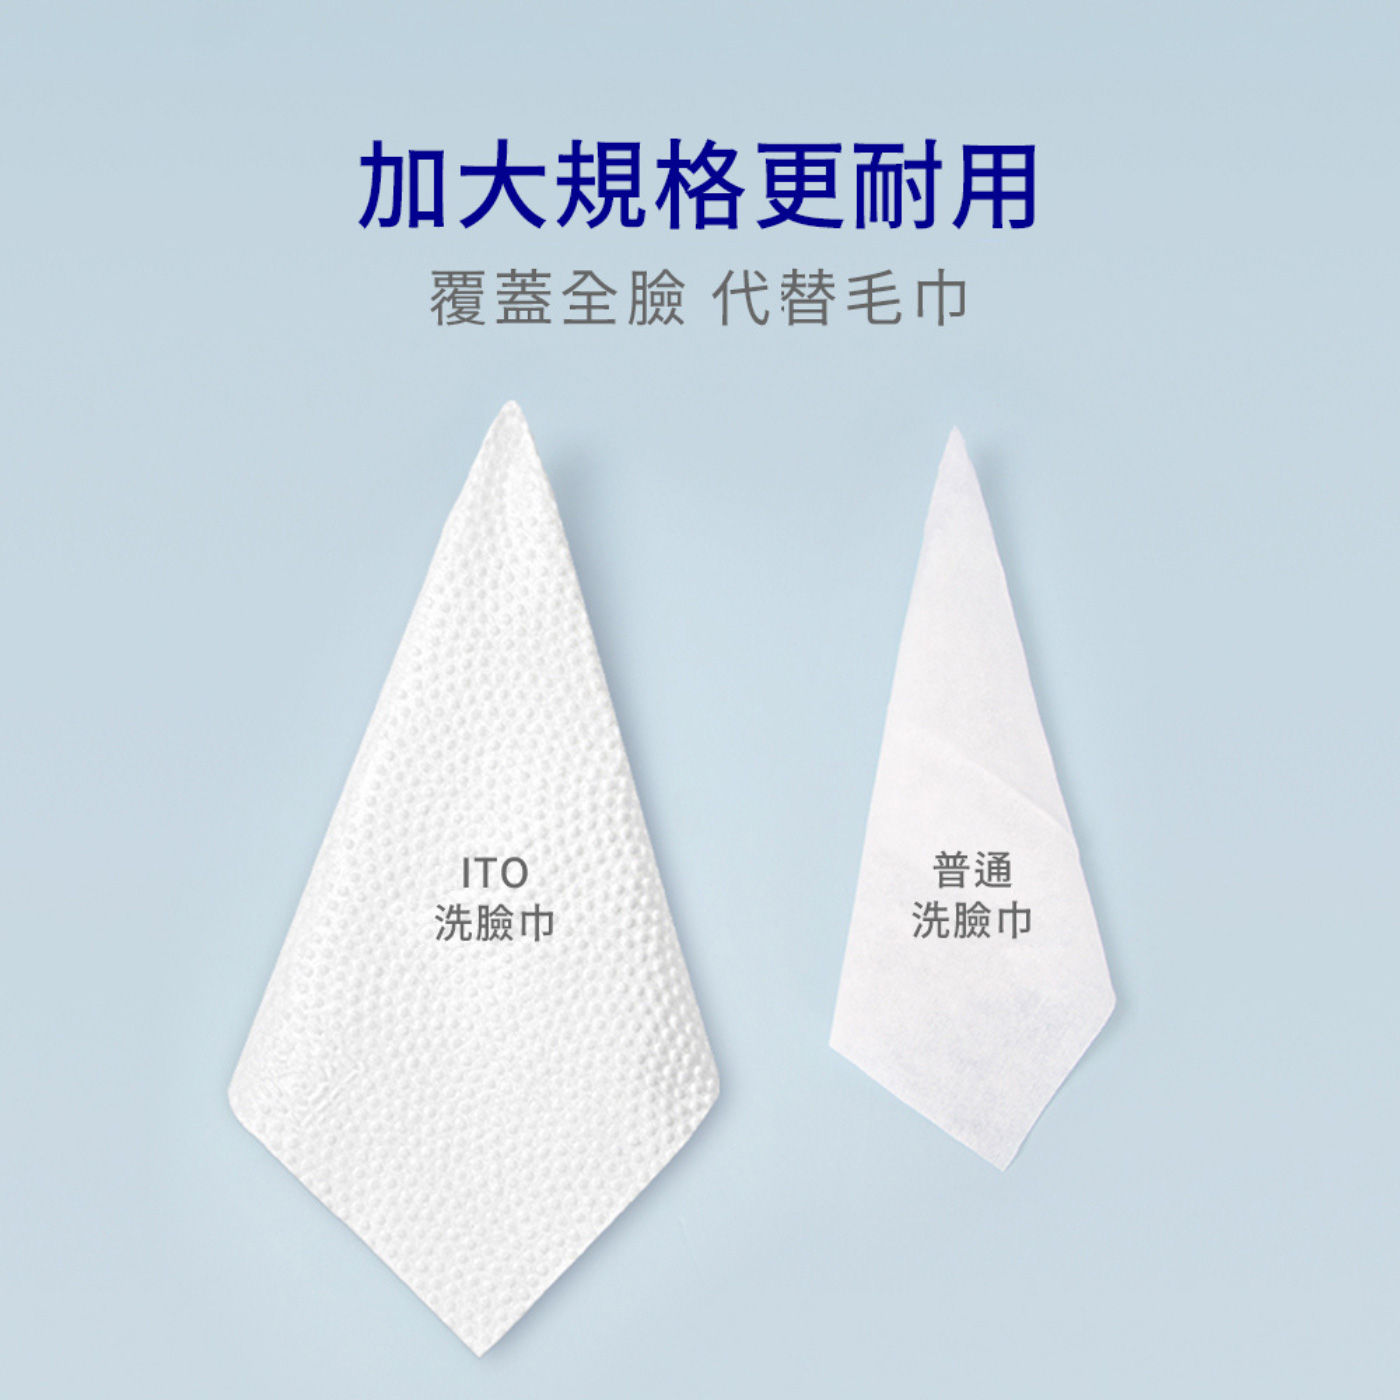 ITO 抽取式洗臉巾 66片 X 6包加大規格更耐用覆蓋全臉代替毛巾